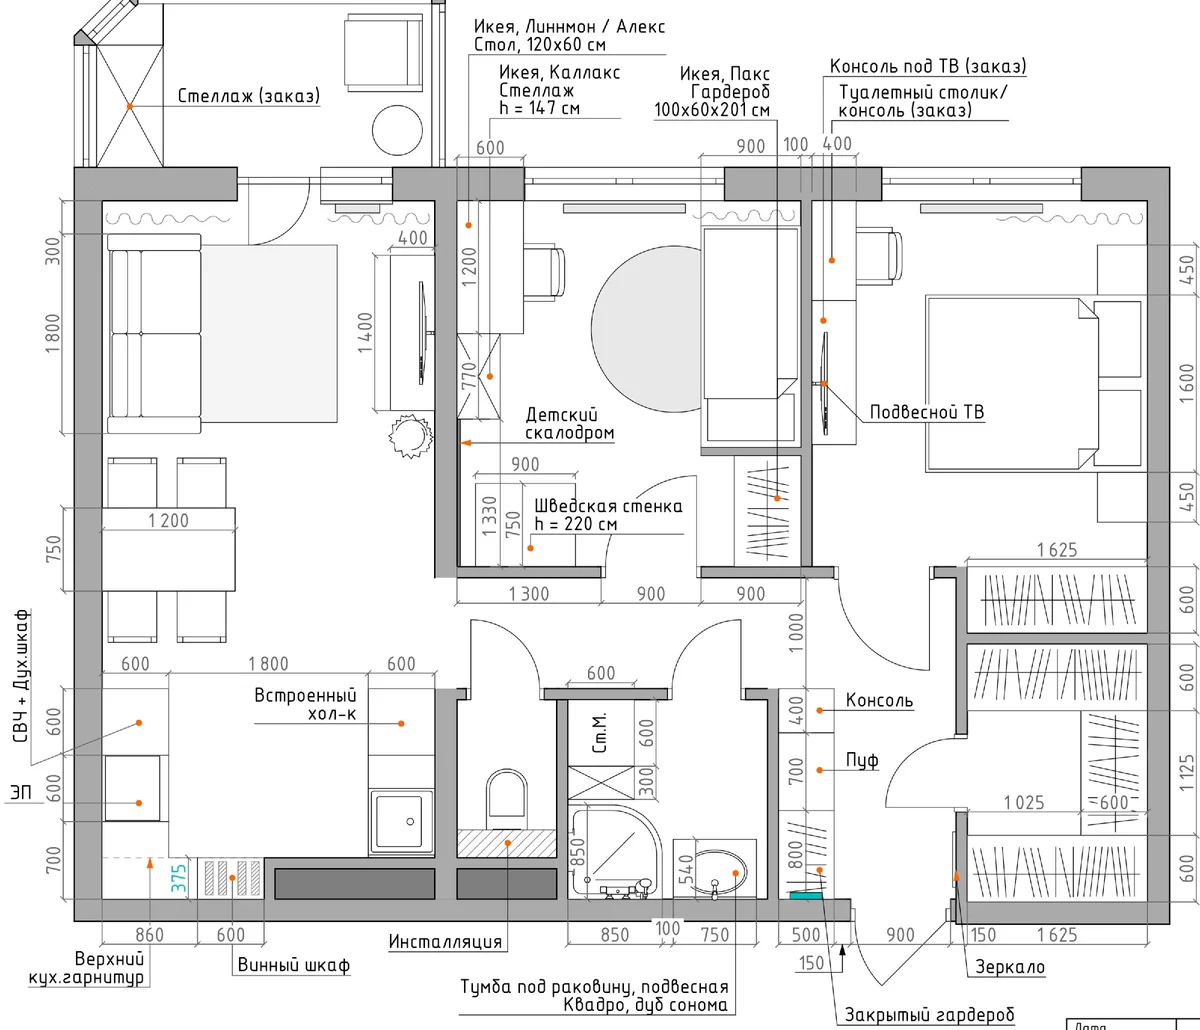 Планировка квартиры 1 комнатной 32 м2 и ее особенности обустройства